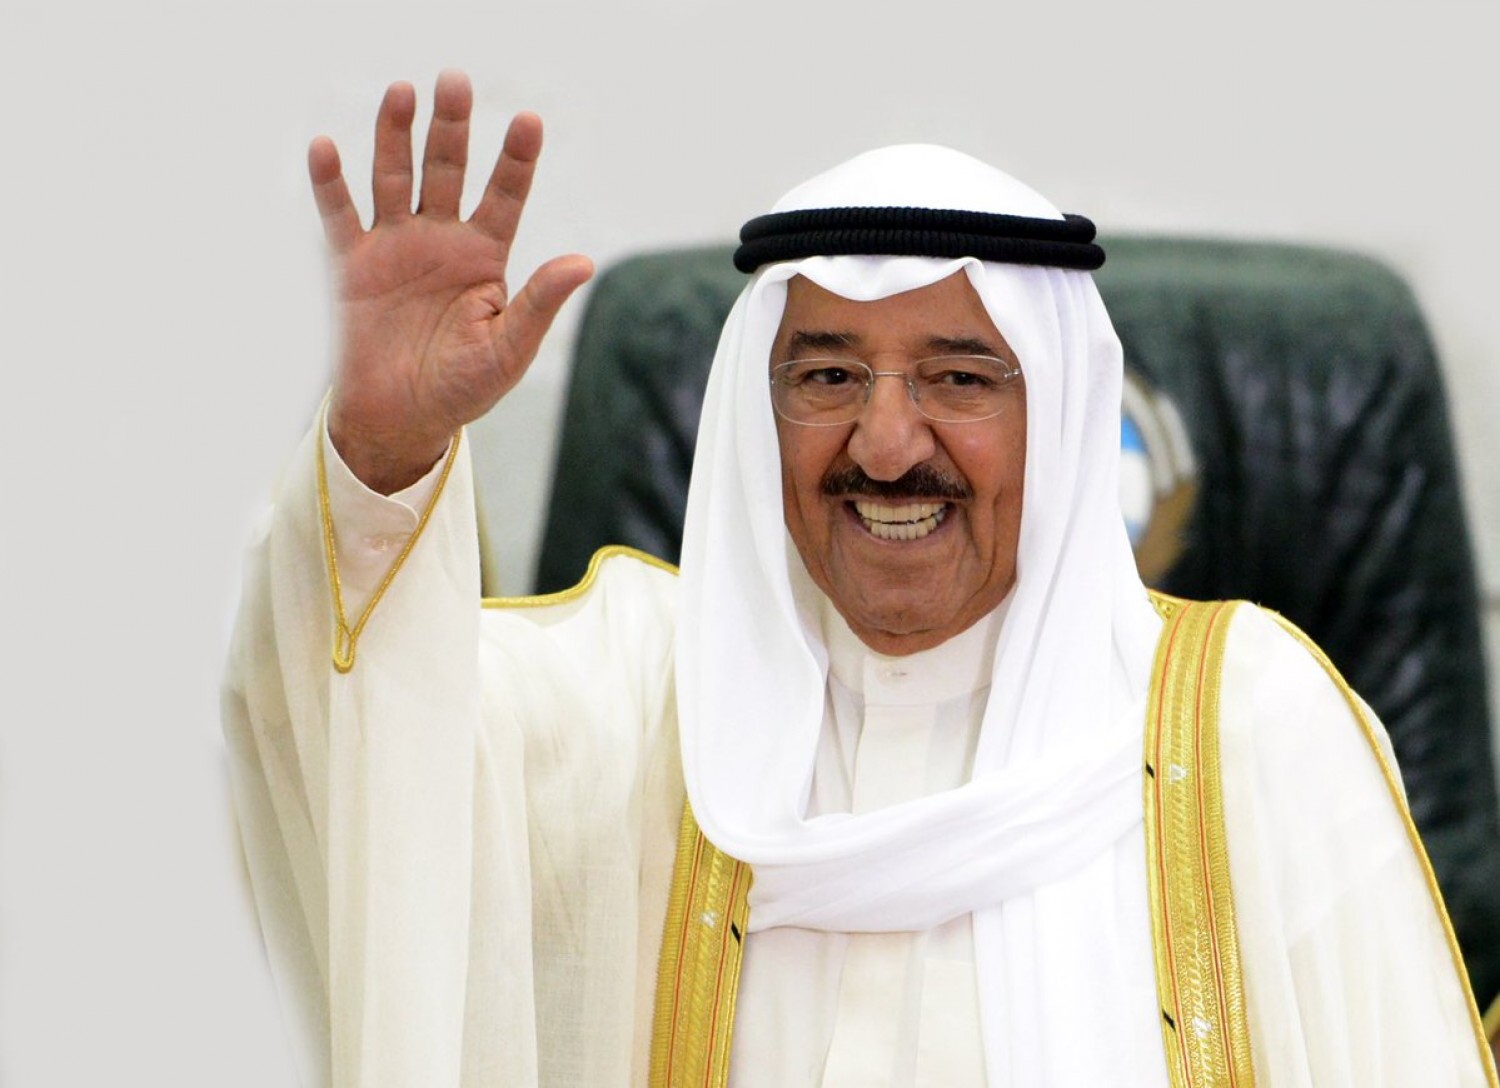 “نتابع بكل قلق وألم”... أمير الكويت يوجه دعوة إلى دول الخليج